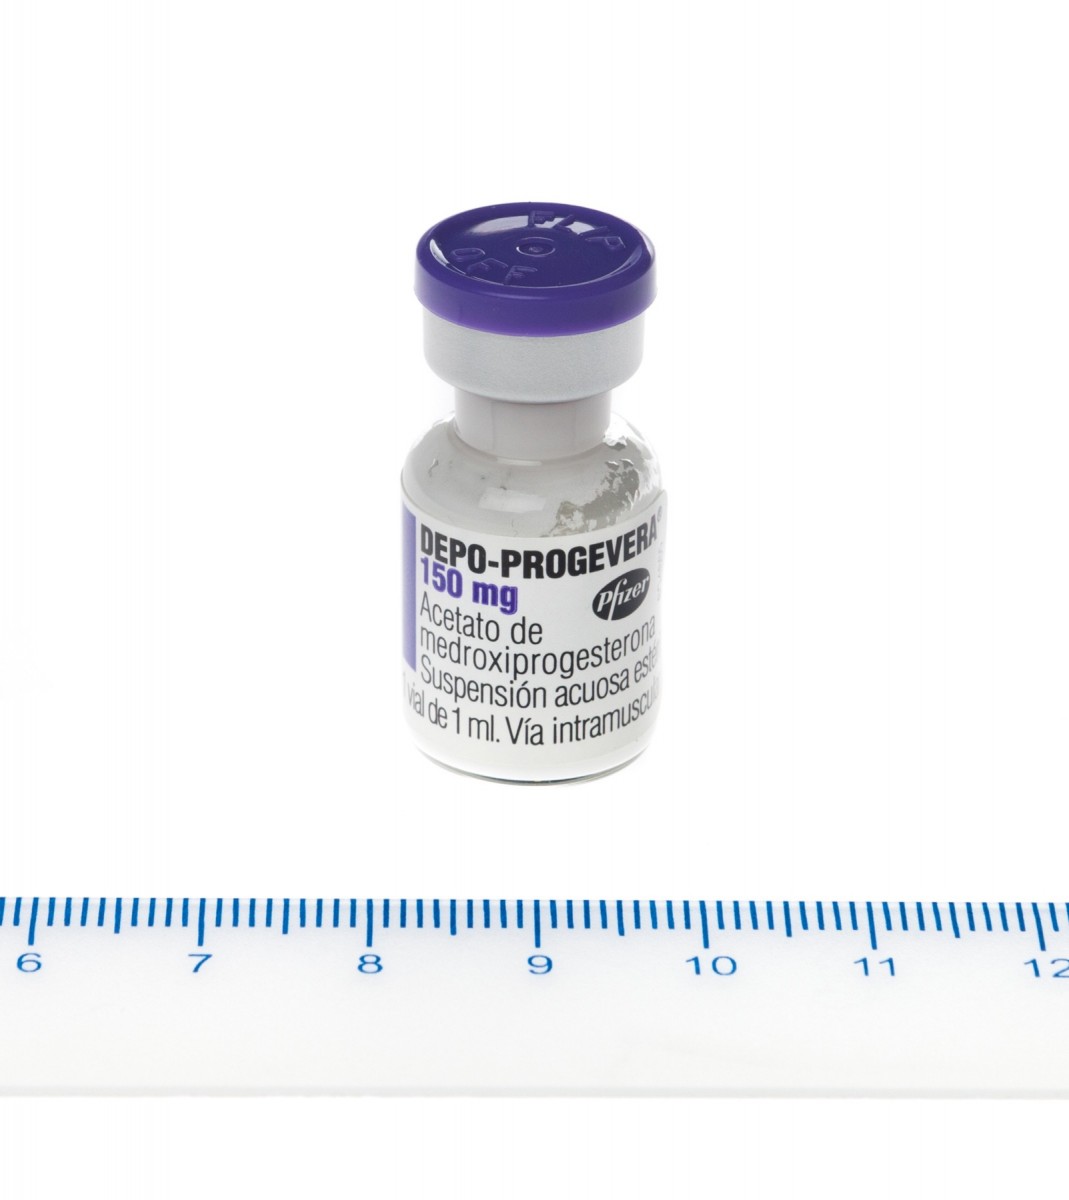 DEPO-PROGEVERA 150 mg/ml SUSPENSION INYECTABLE, 1 vial de 1 ml fotografía de la forma farmacéutica.